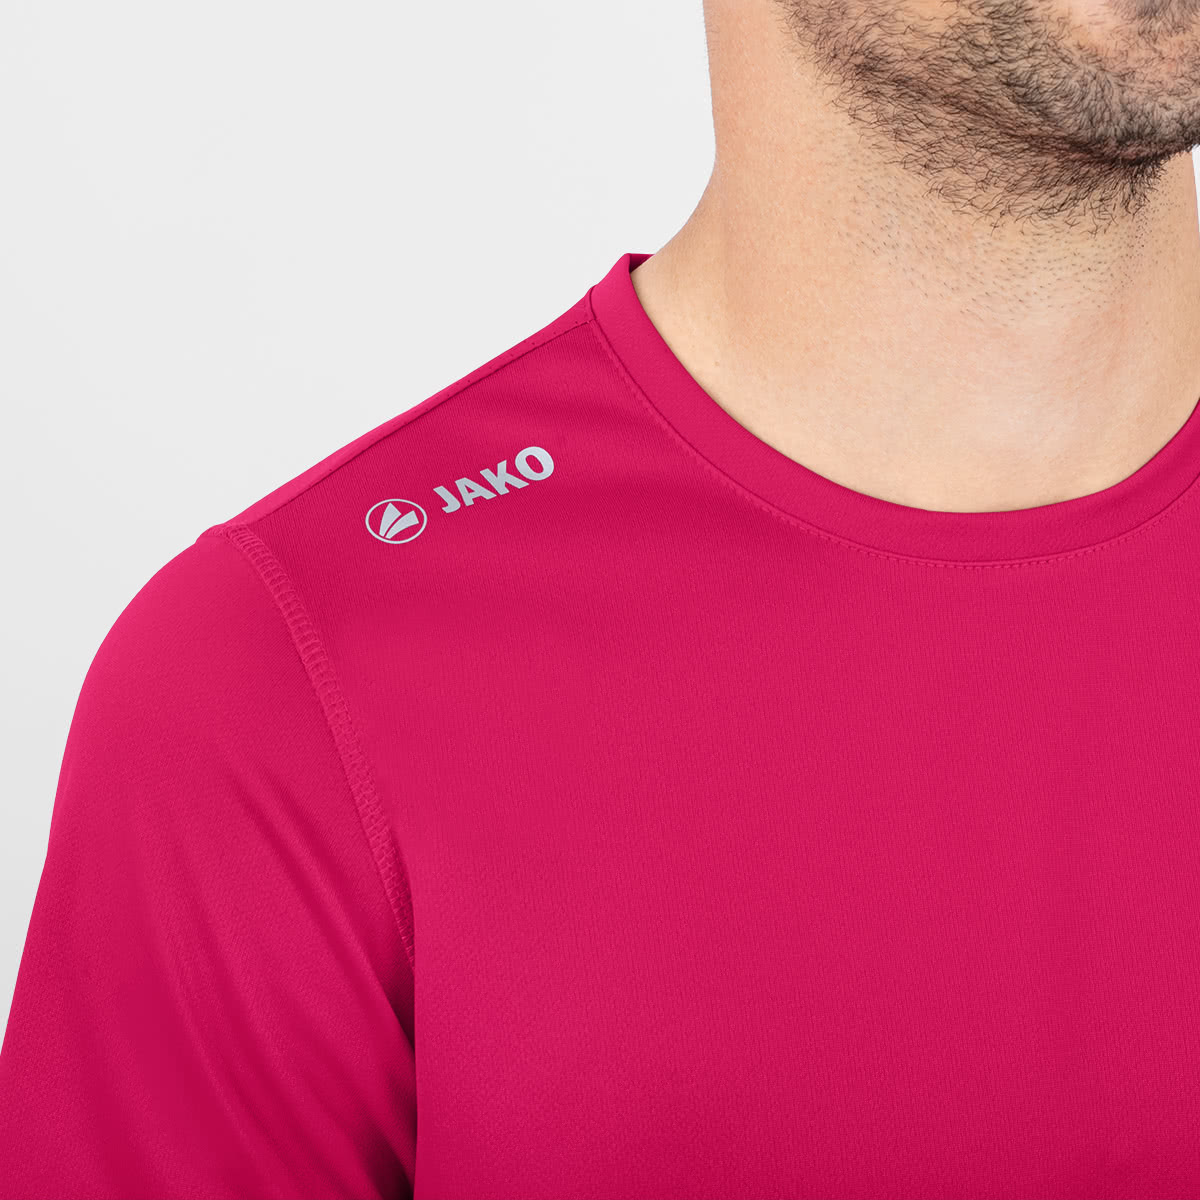 Jako Runningshirt T-Shirt Herren Laufshirt Funktionsshirt Sport pink 6175 